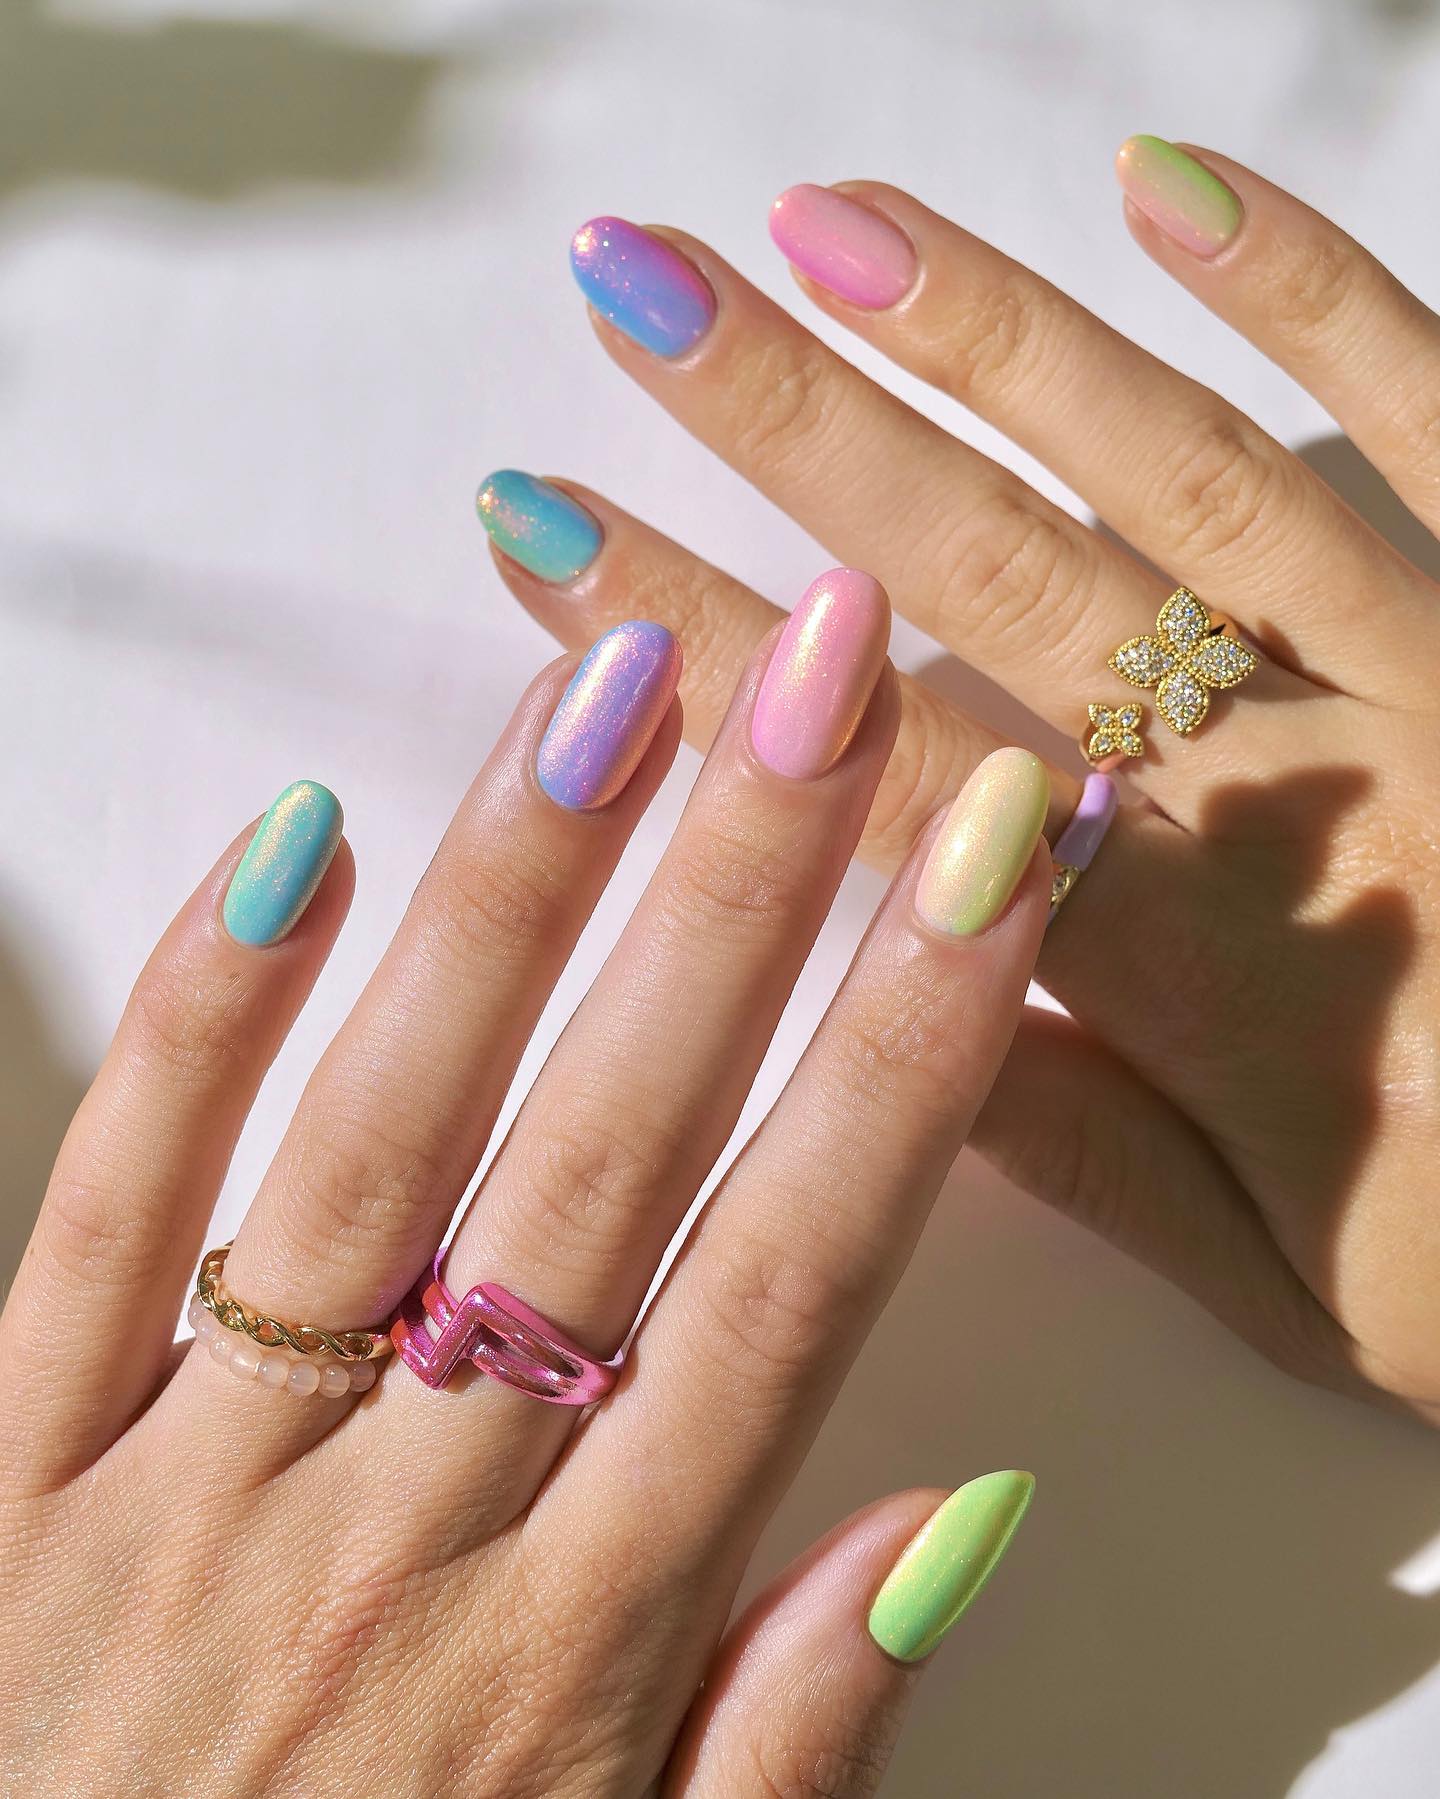 Shiny Pastel Manicure on Oval Nails